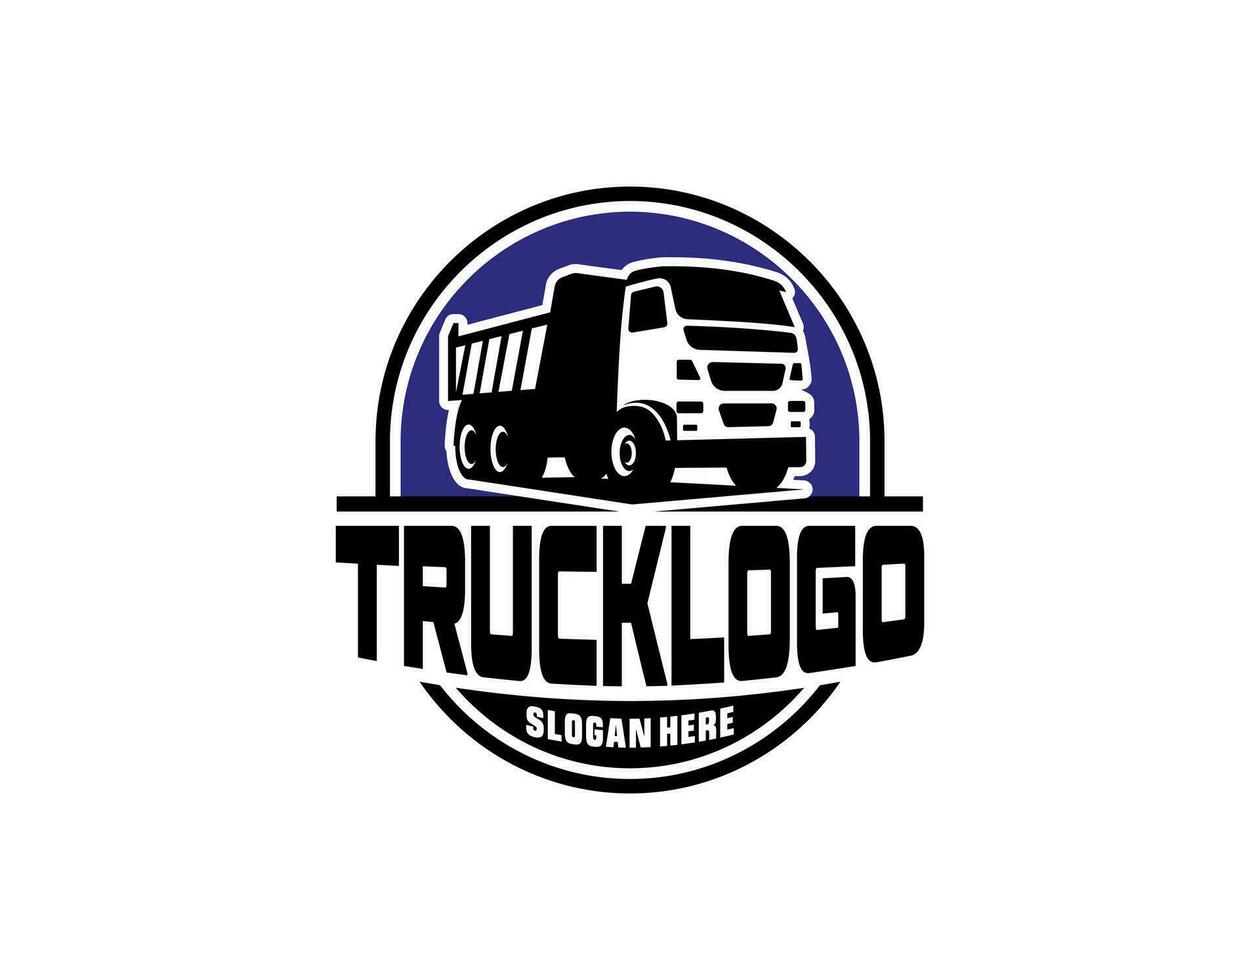 déverser camionnage entreprise logo conception. benne un camion logo vecteur isolé. prêt fabriqué logo modèle ensemble vecteur isolé